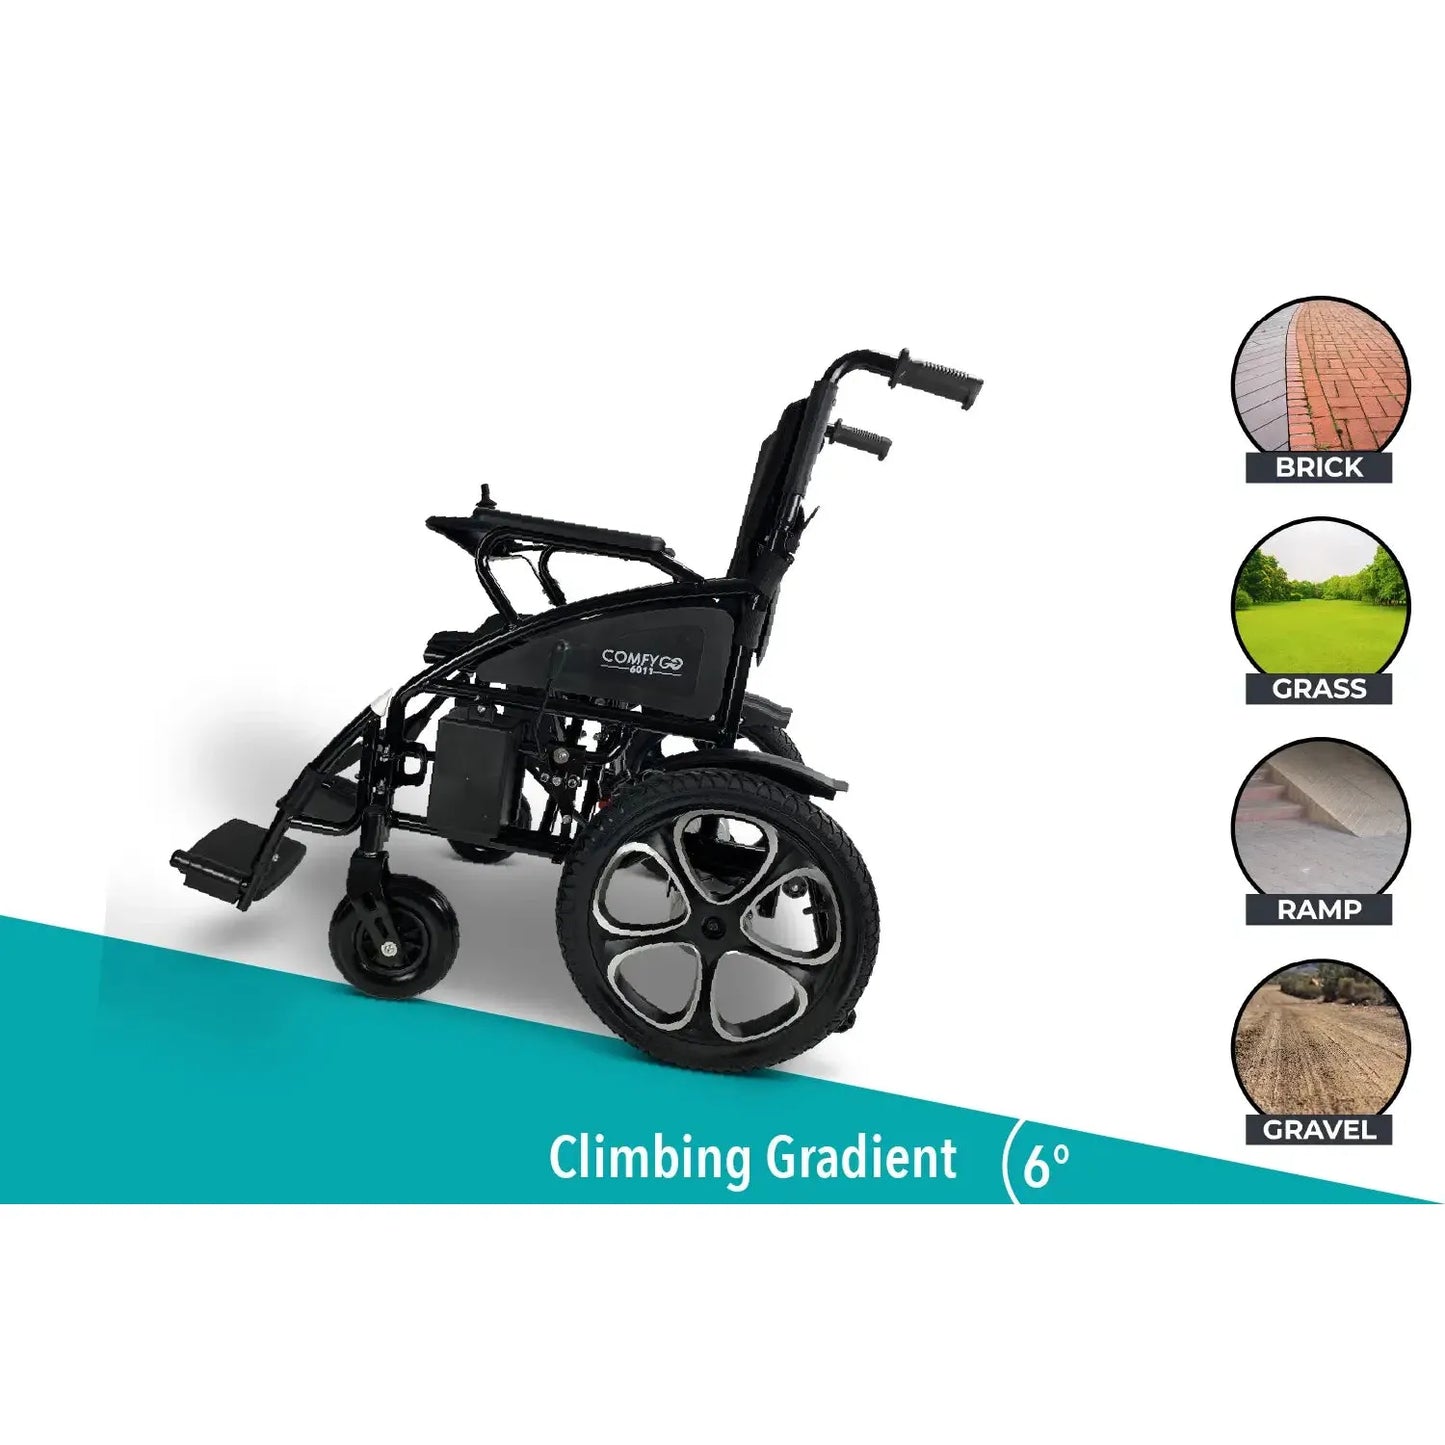 Gray ComfyGO 6011 Electric Wheelchair